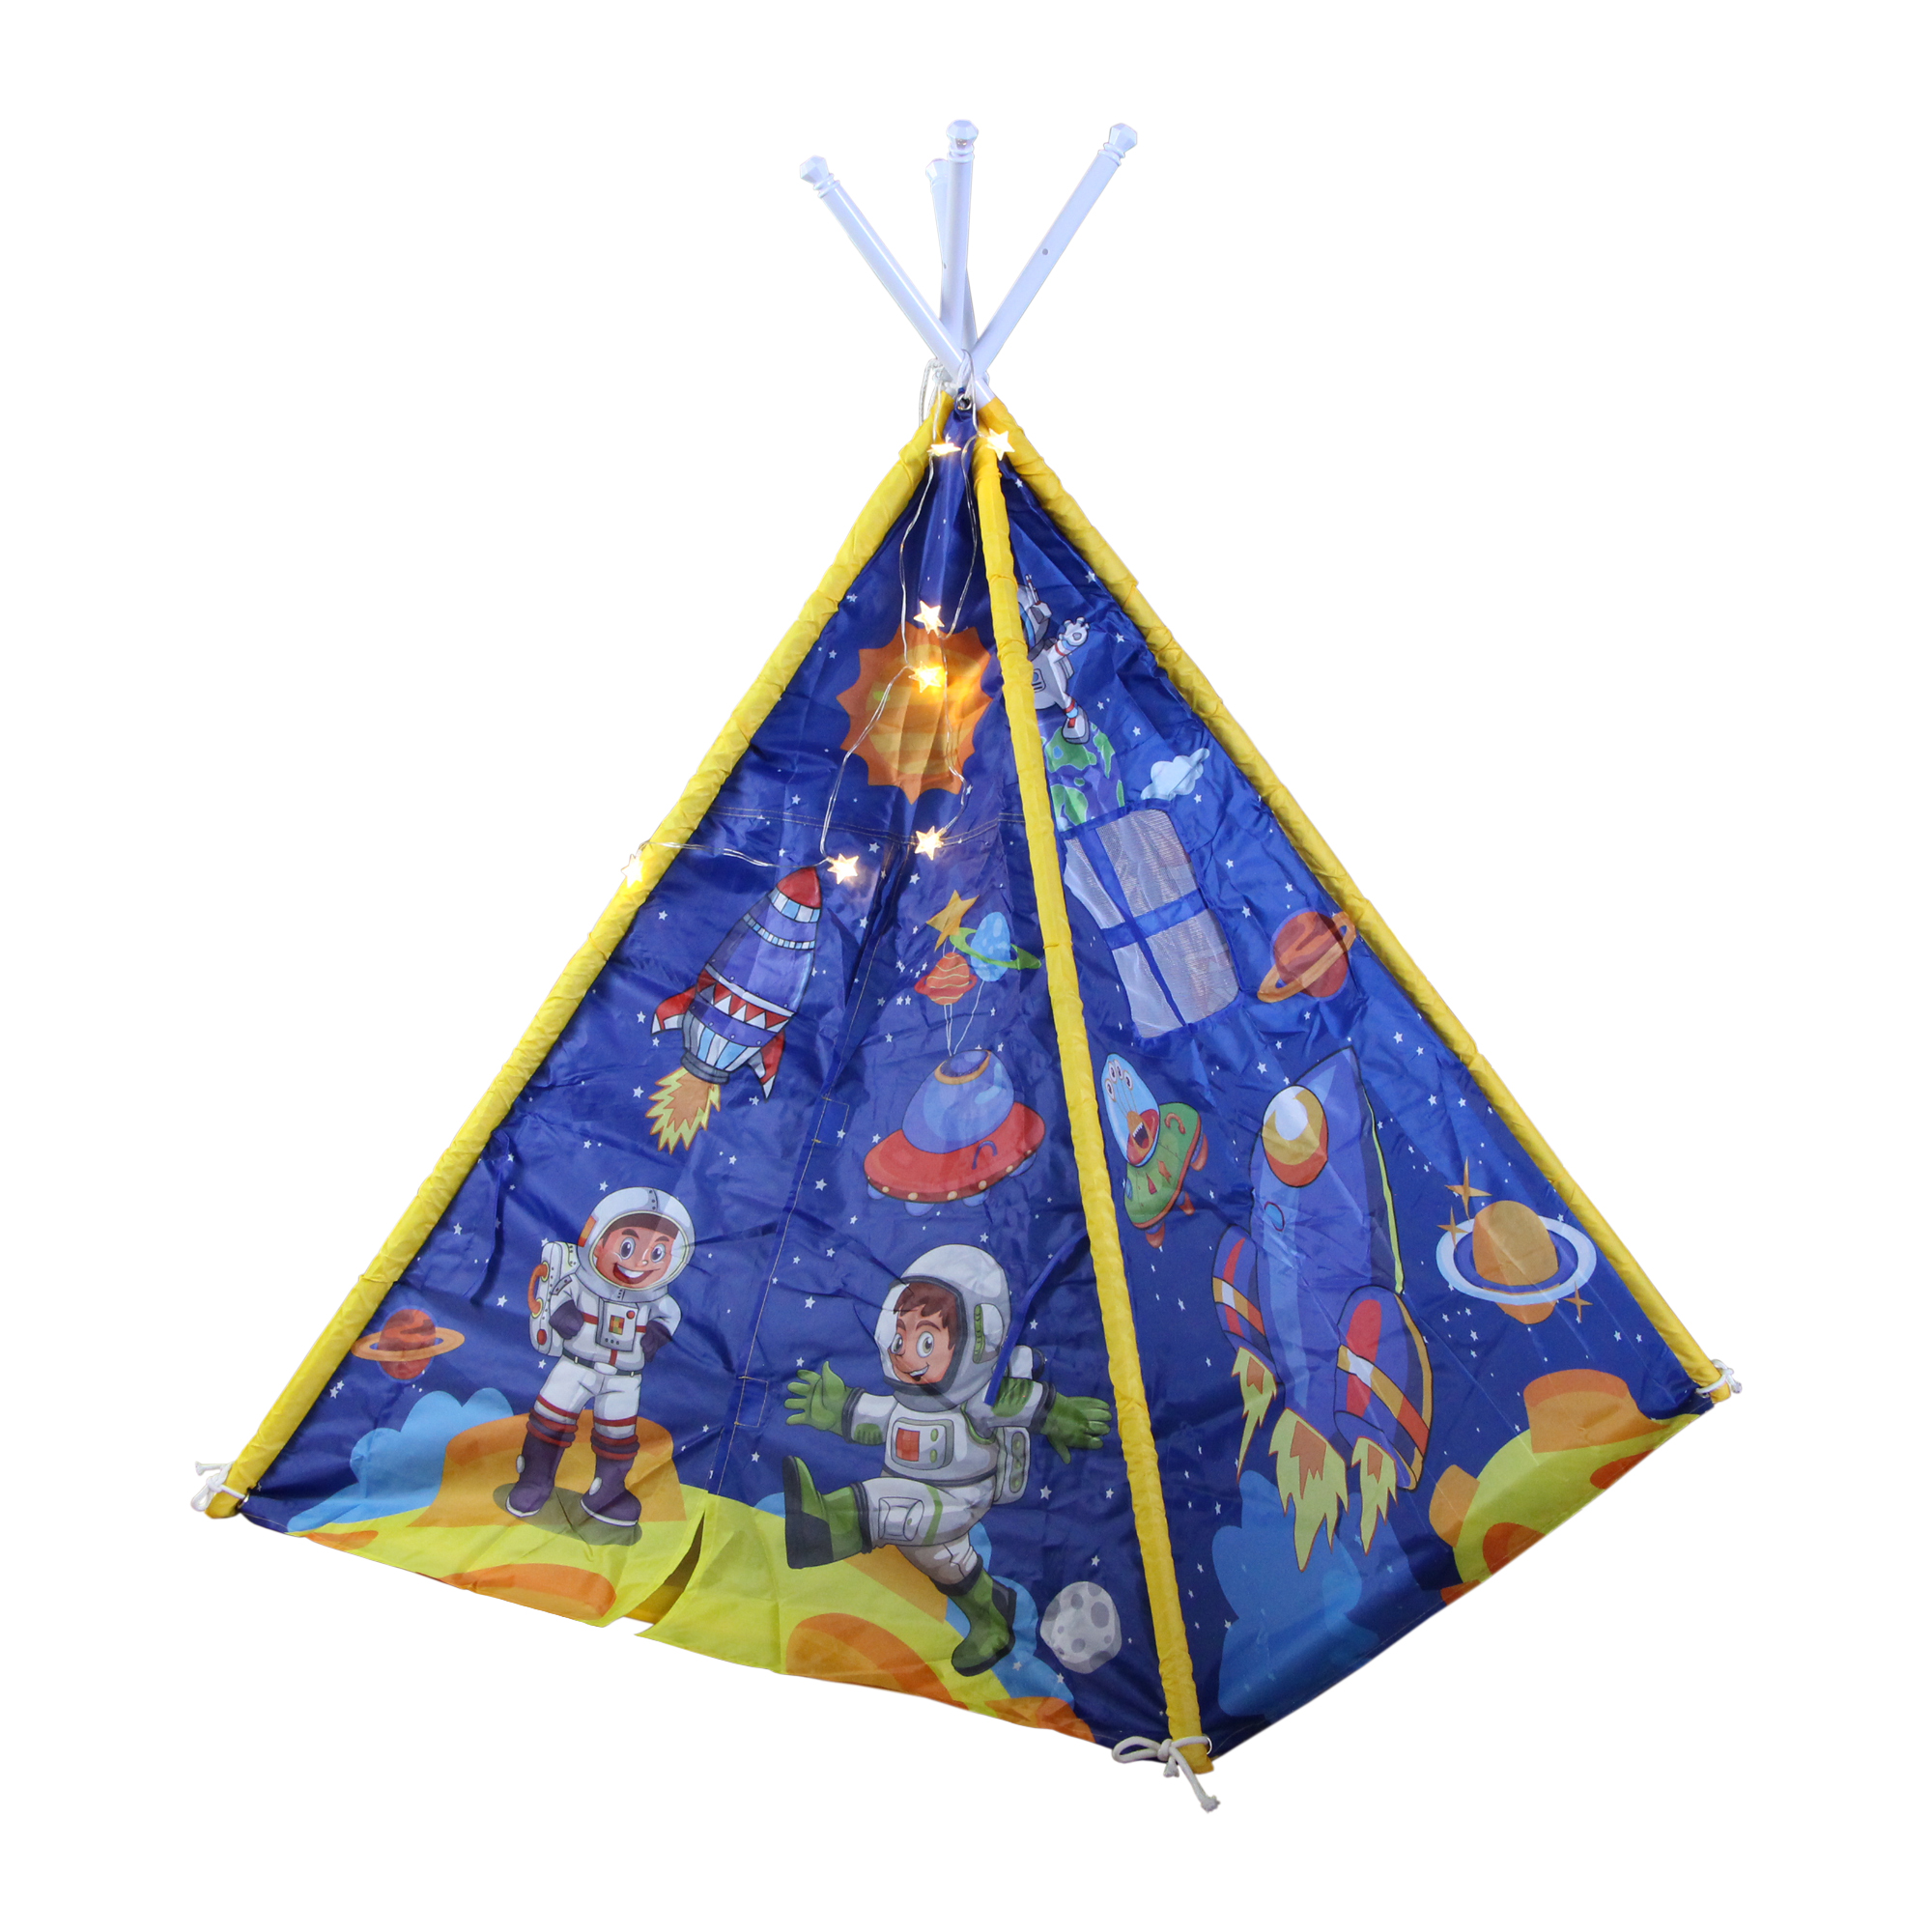 چادر بازی کودک طرح سرخپوستی مدل Space Tent